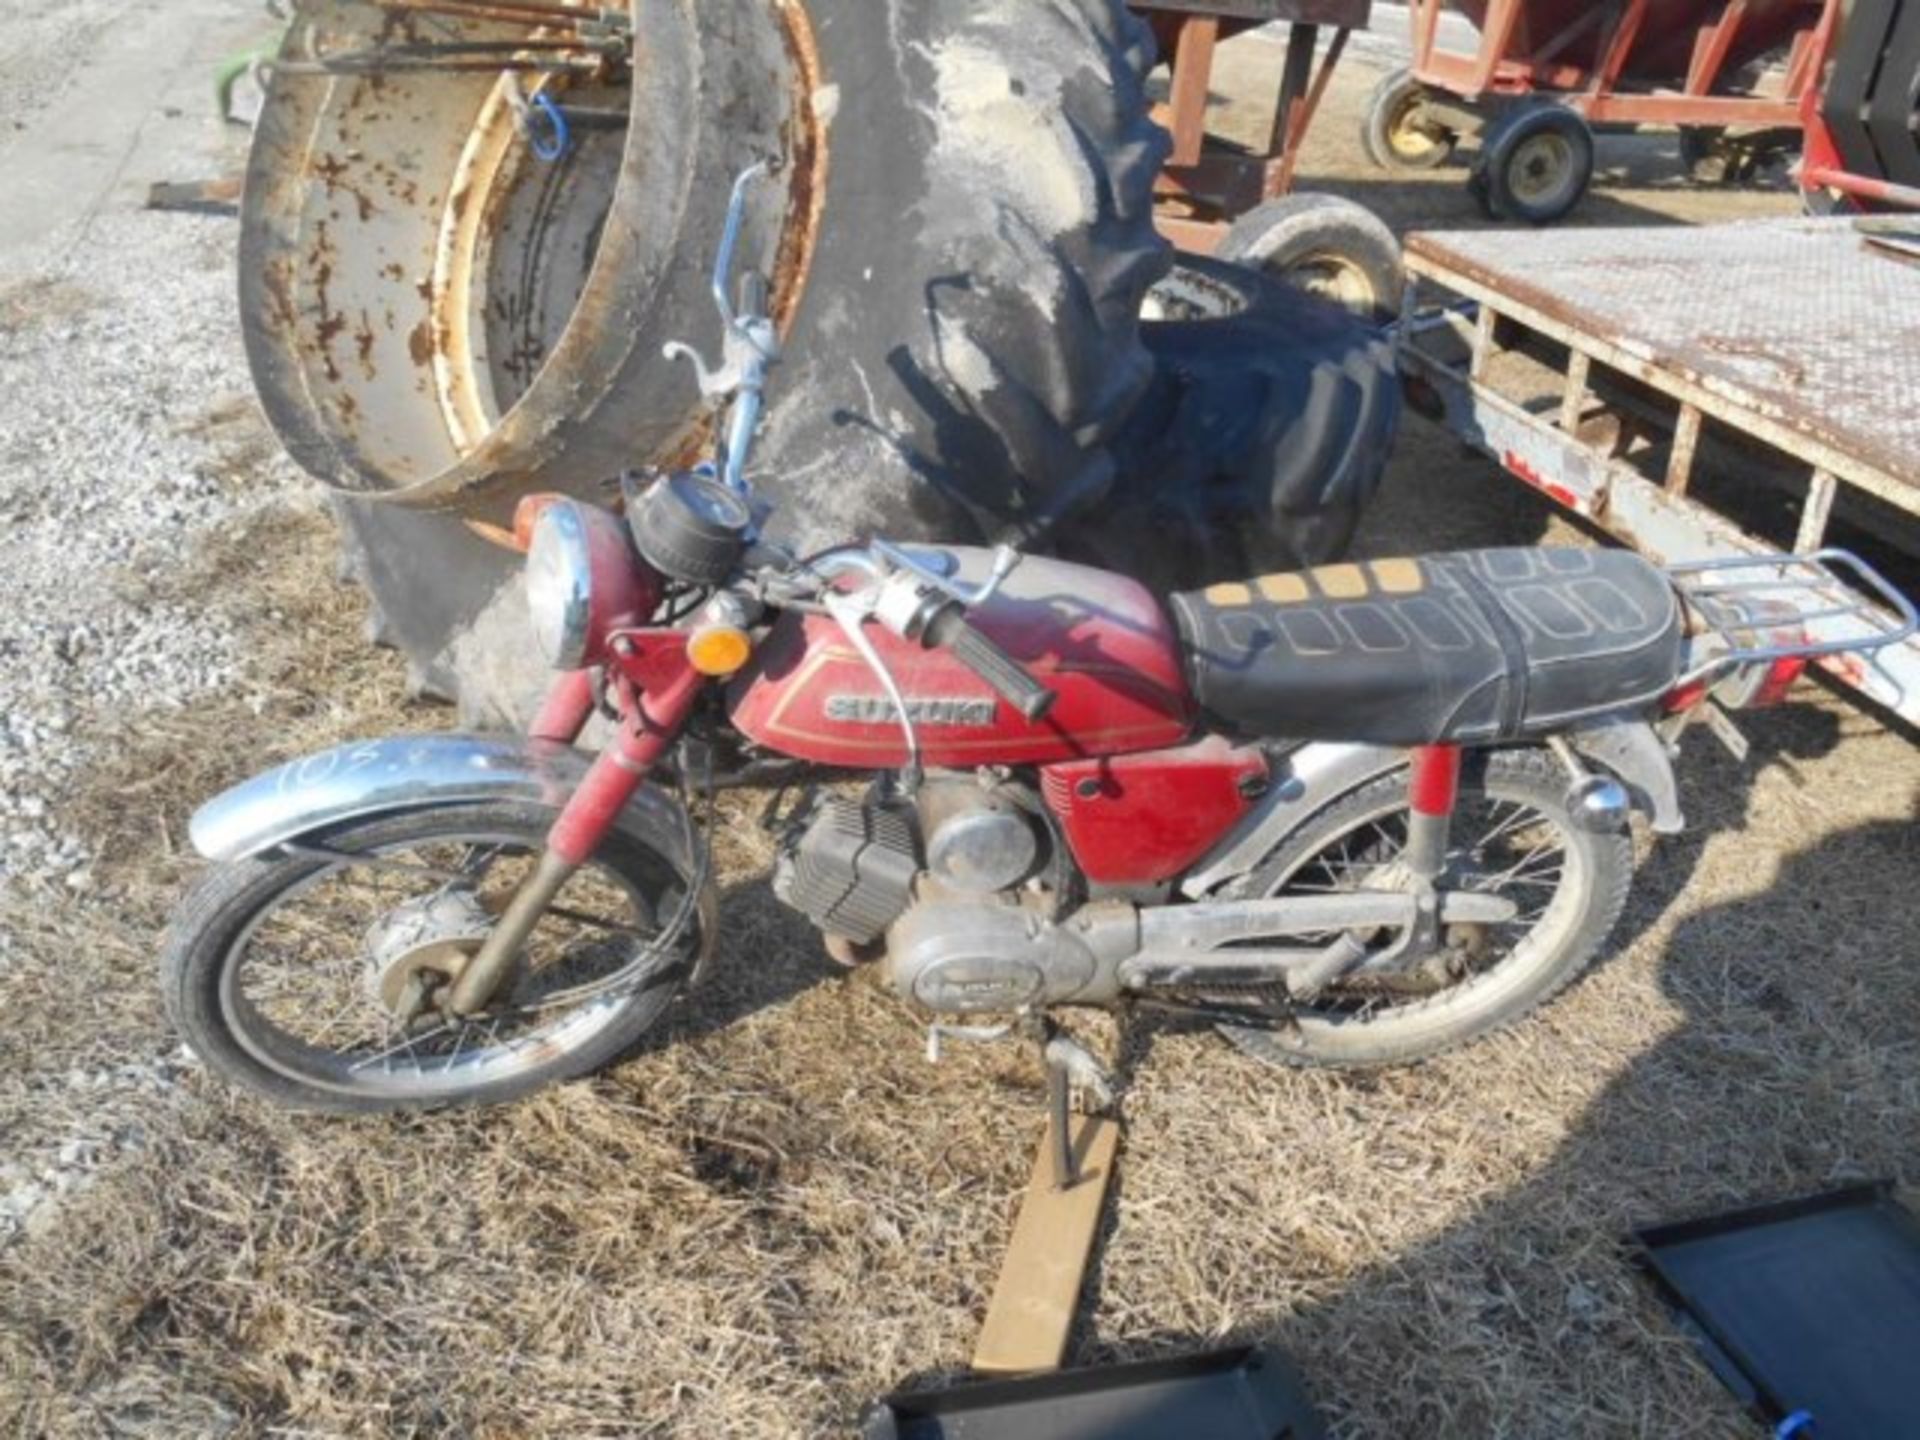 Lot #22563 Kawasaki Gofer 100 Dirt Bike - Image 2 of 4